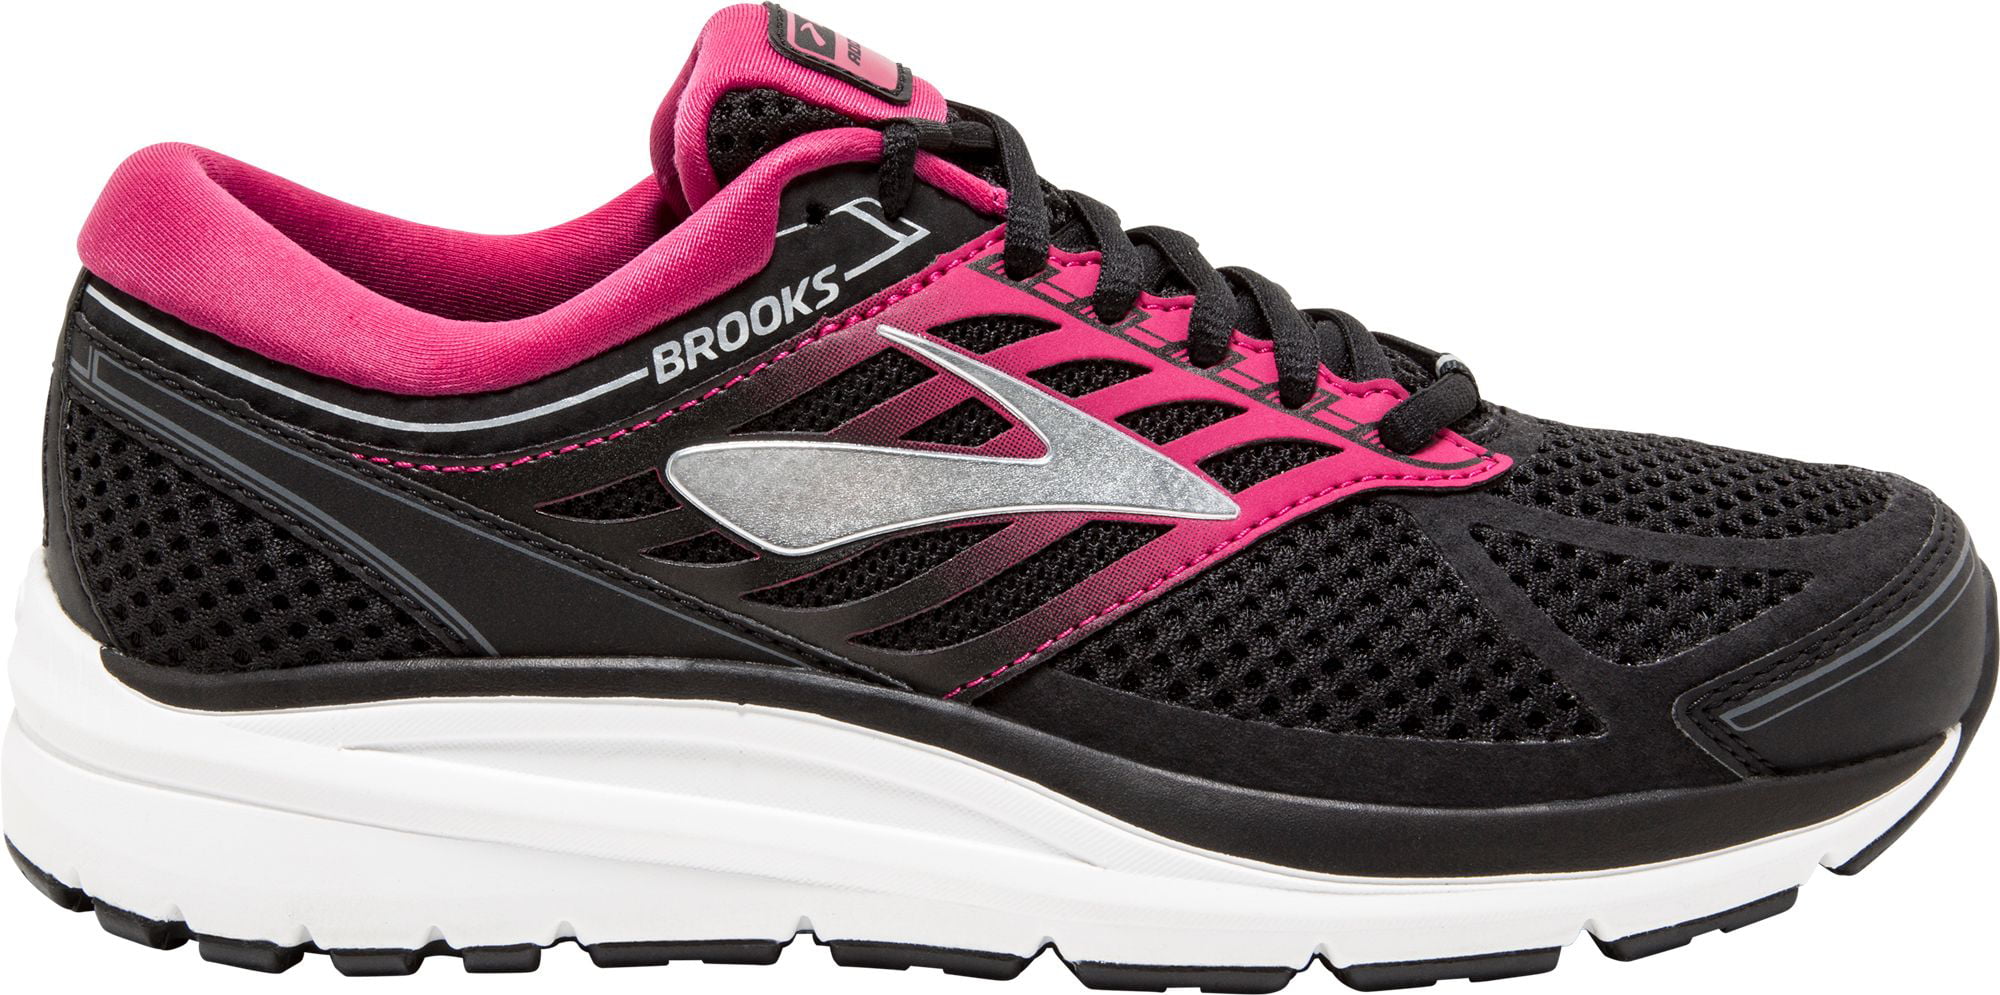 Brooks Shoes : Apparel - Walmart.com 